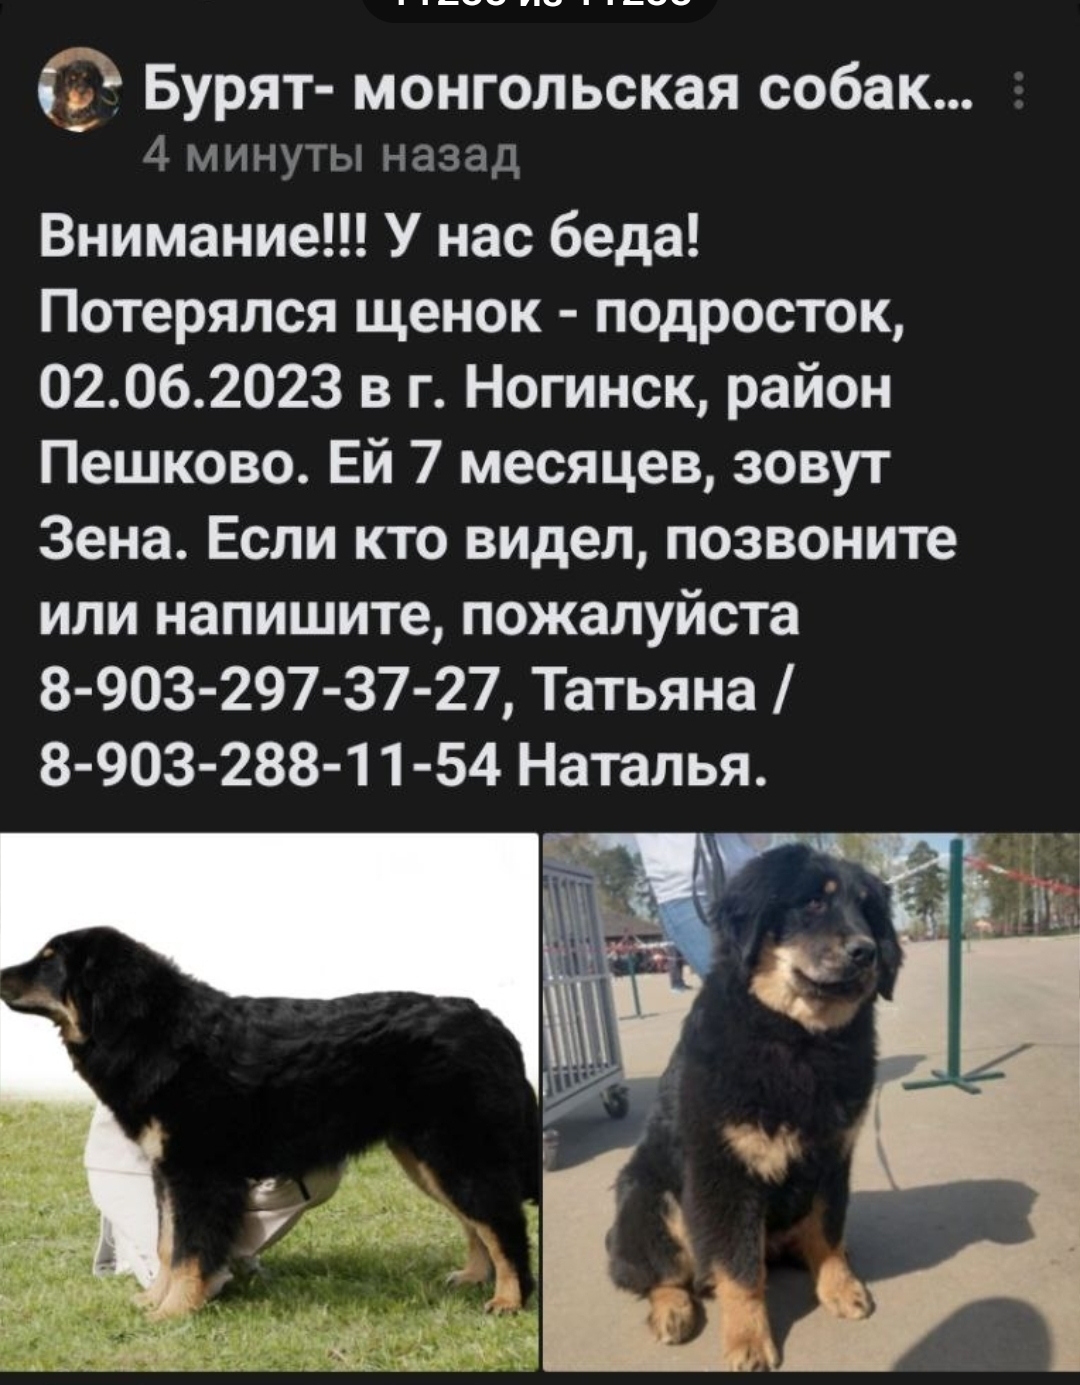 Помогите найти щенка ХОТОШО(бурят-монгольская собака) | Пикабу